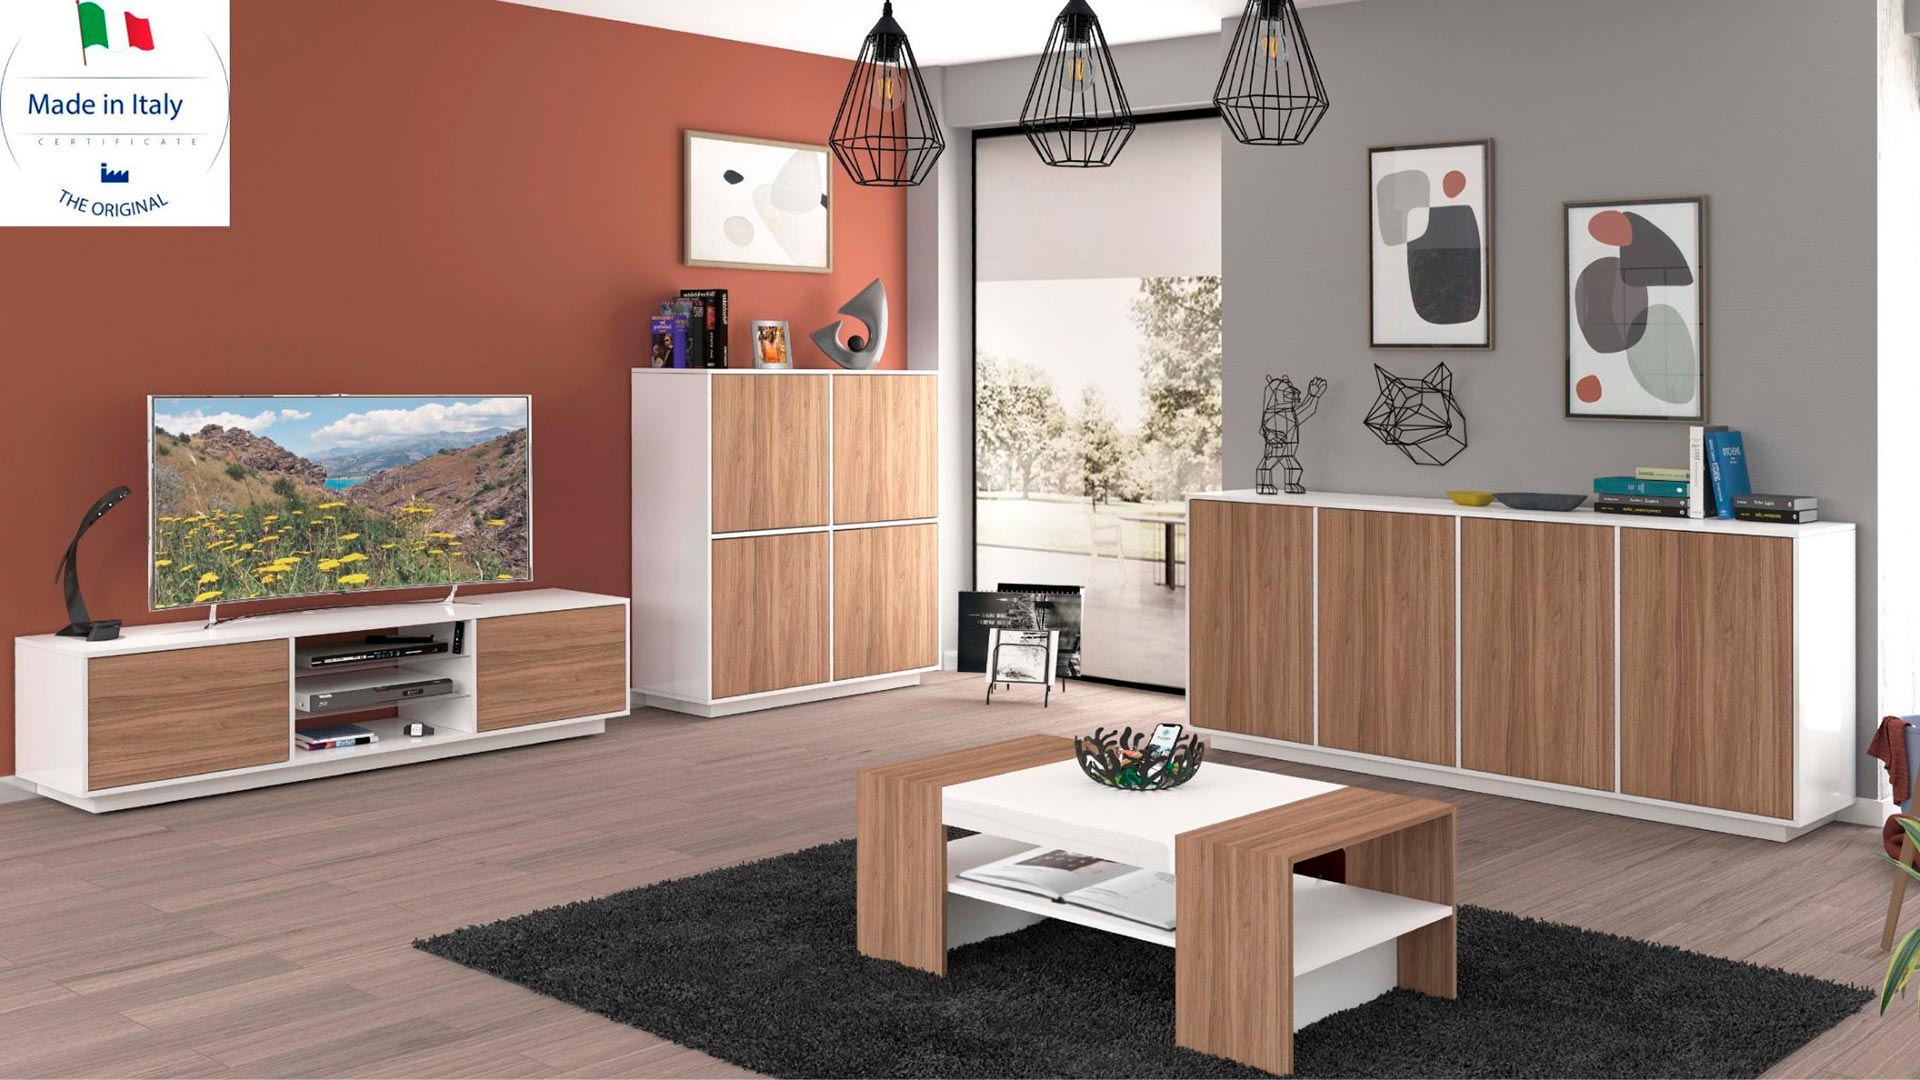 L'arredamento Made in Italy tra valore, stili e tendenze - Web Furniture